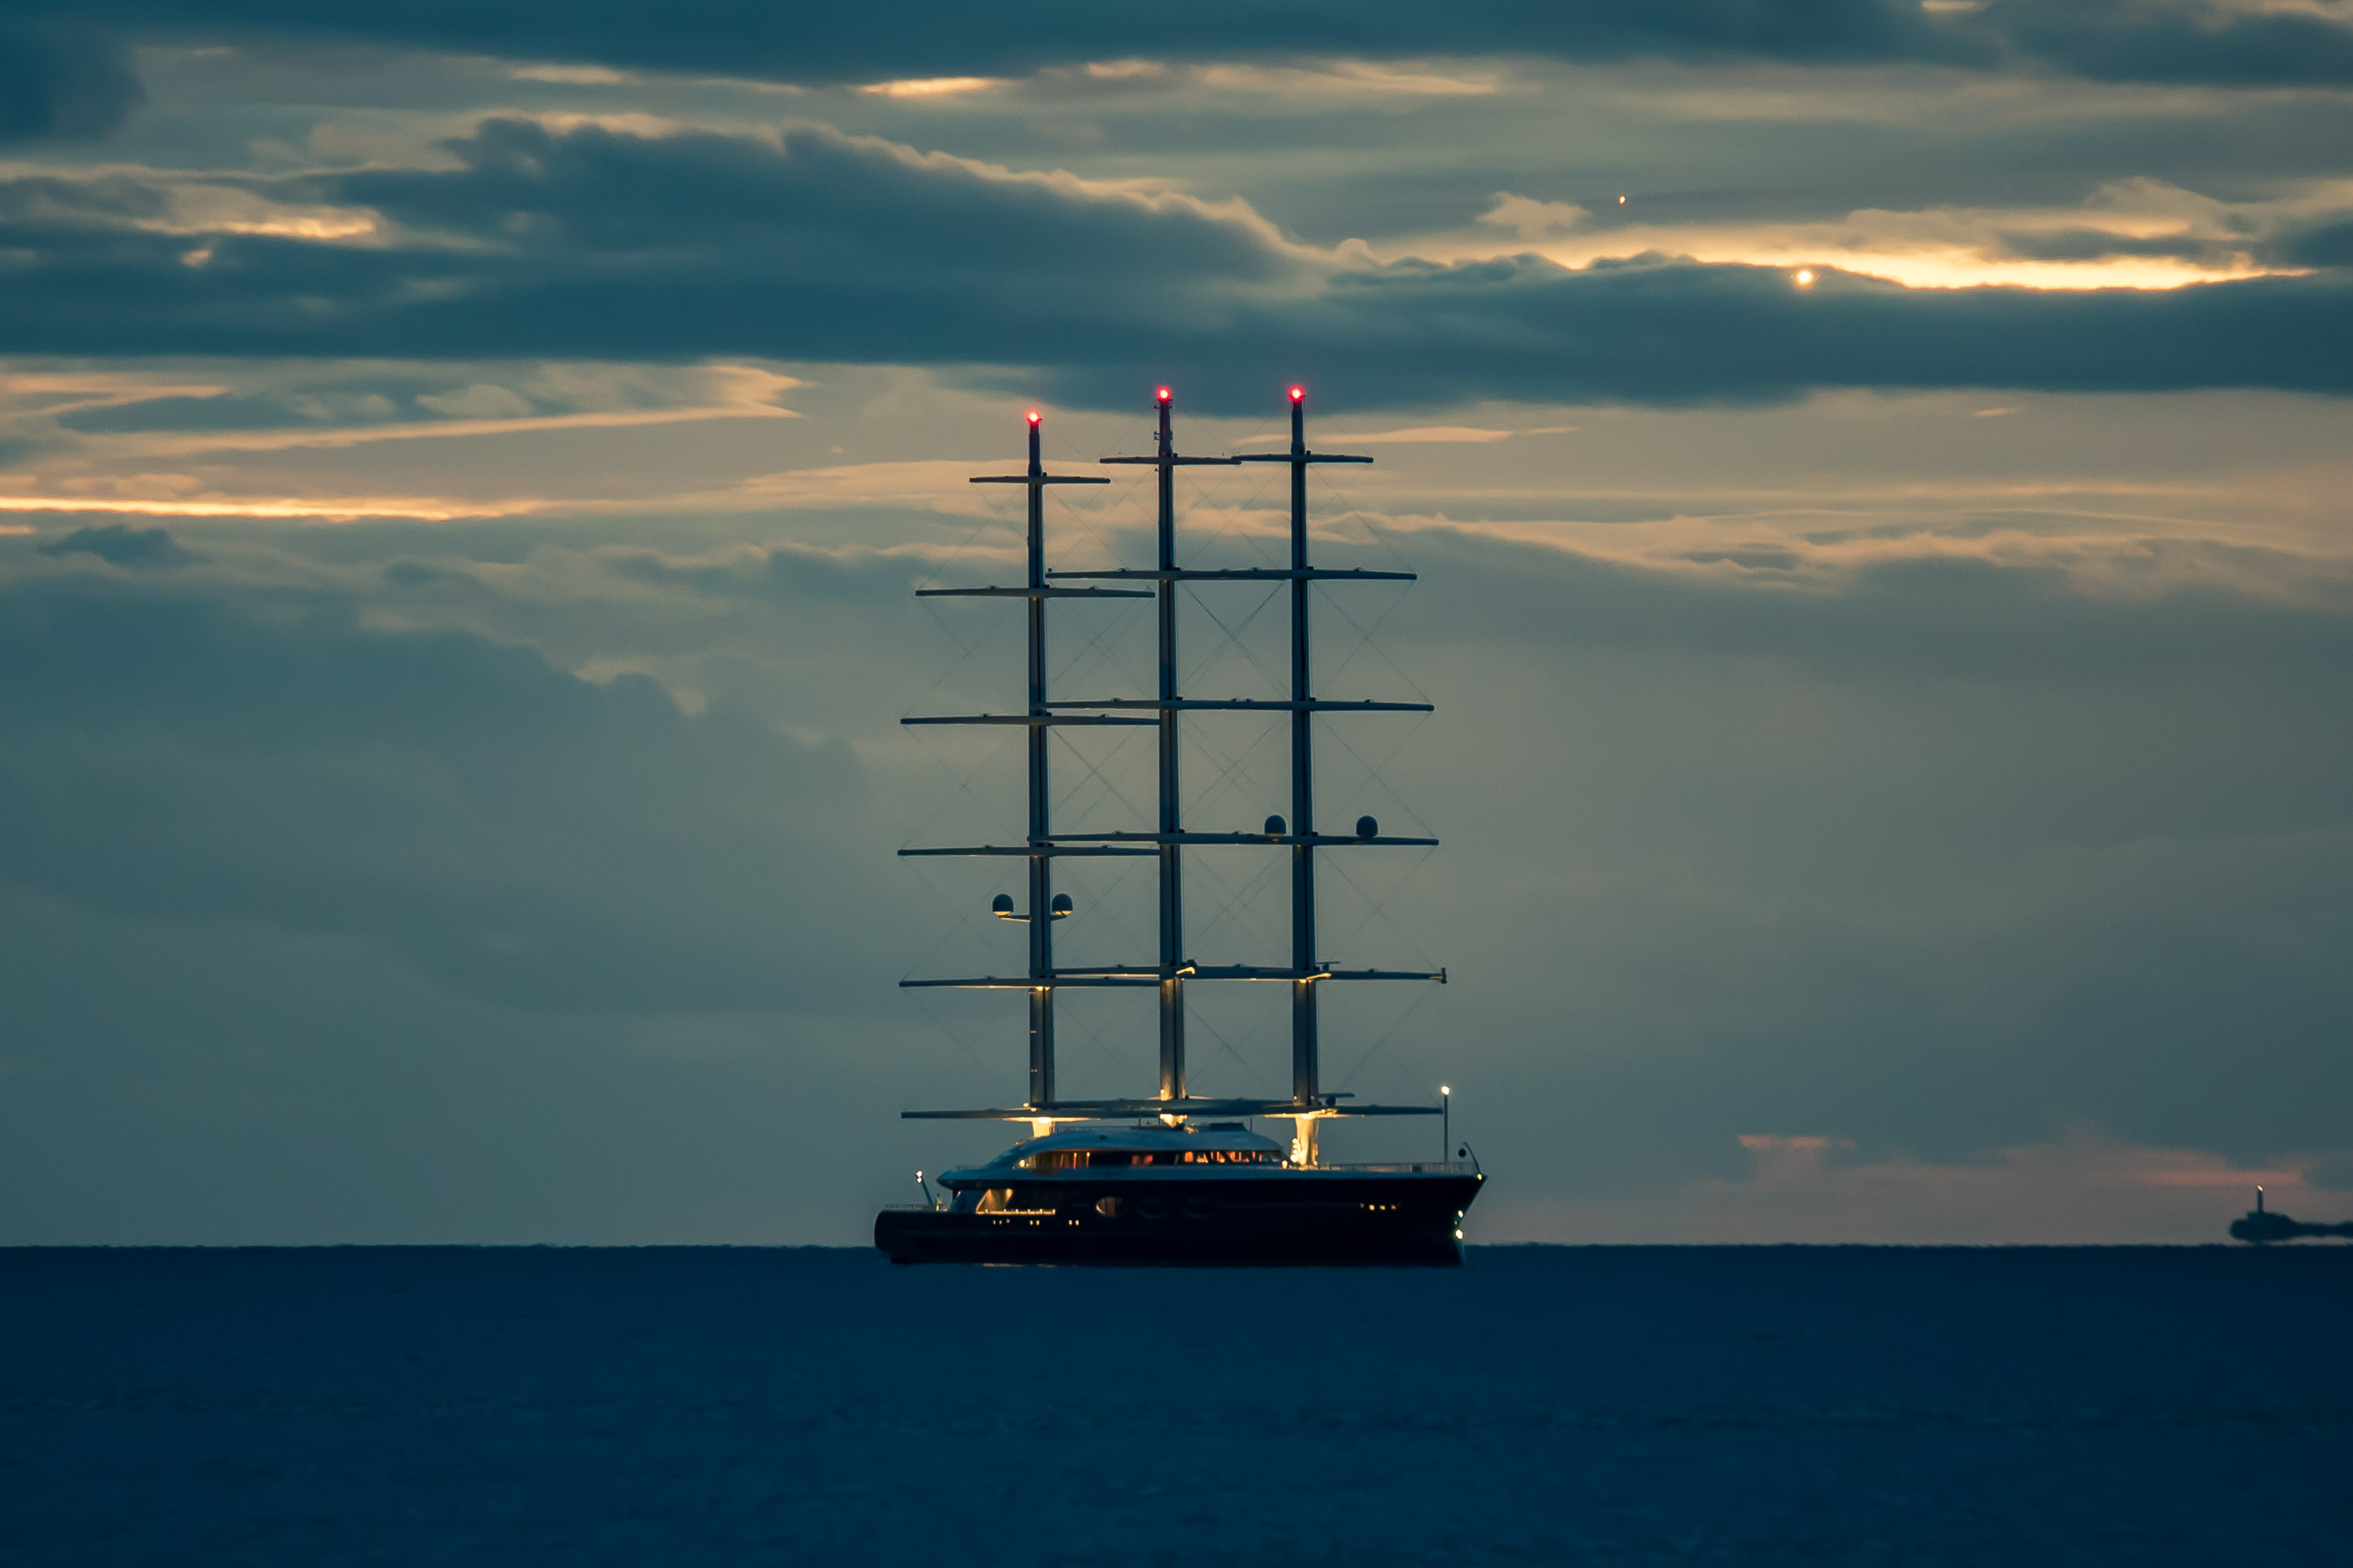 Super Sailing Yacht Black Pearl at anchor